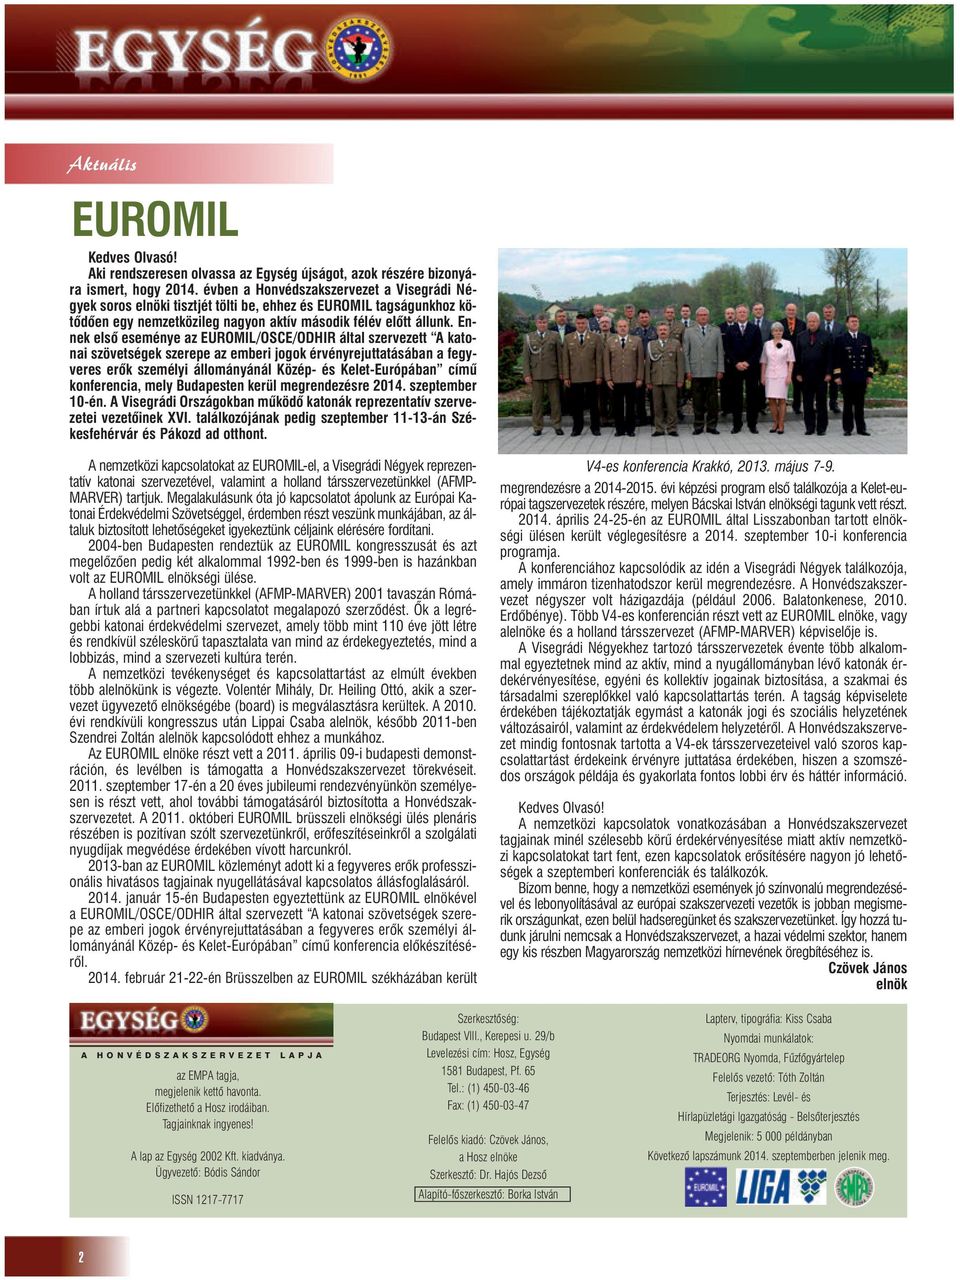 Ennek elsõ eseménye az EUROMIL/OSCE/ODHIR által szervezett A katonai szövetségek szerepe az emberi jogok érvényrejuttatásában a fegyveres erõk személyi állományánál Közép- és Kelet-Európában címû